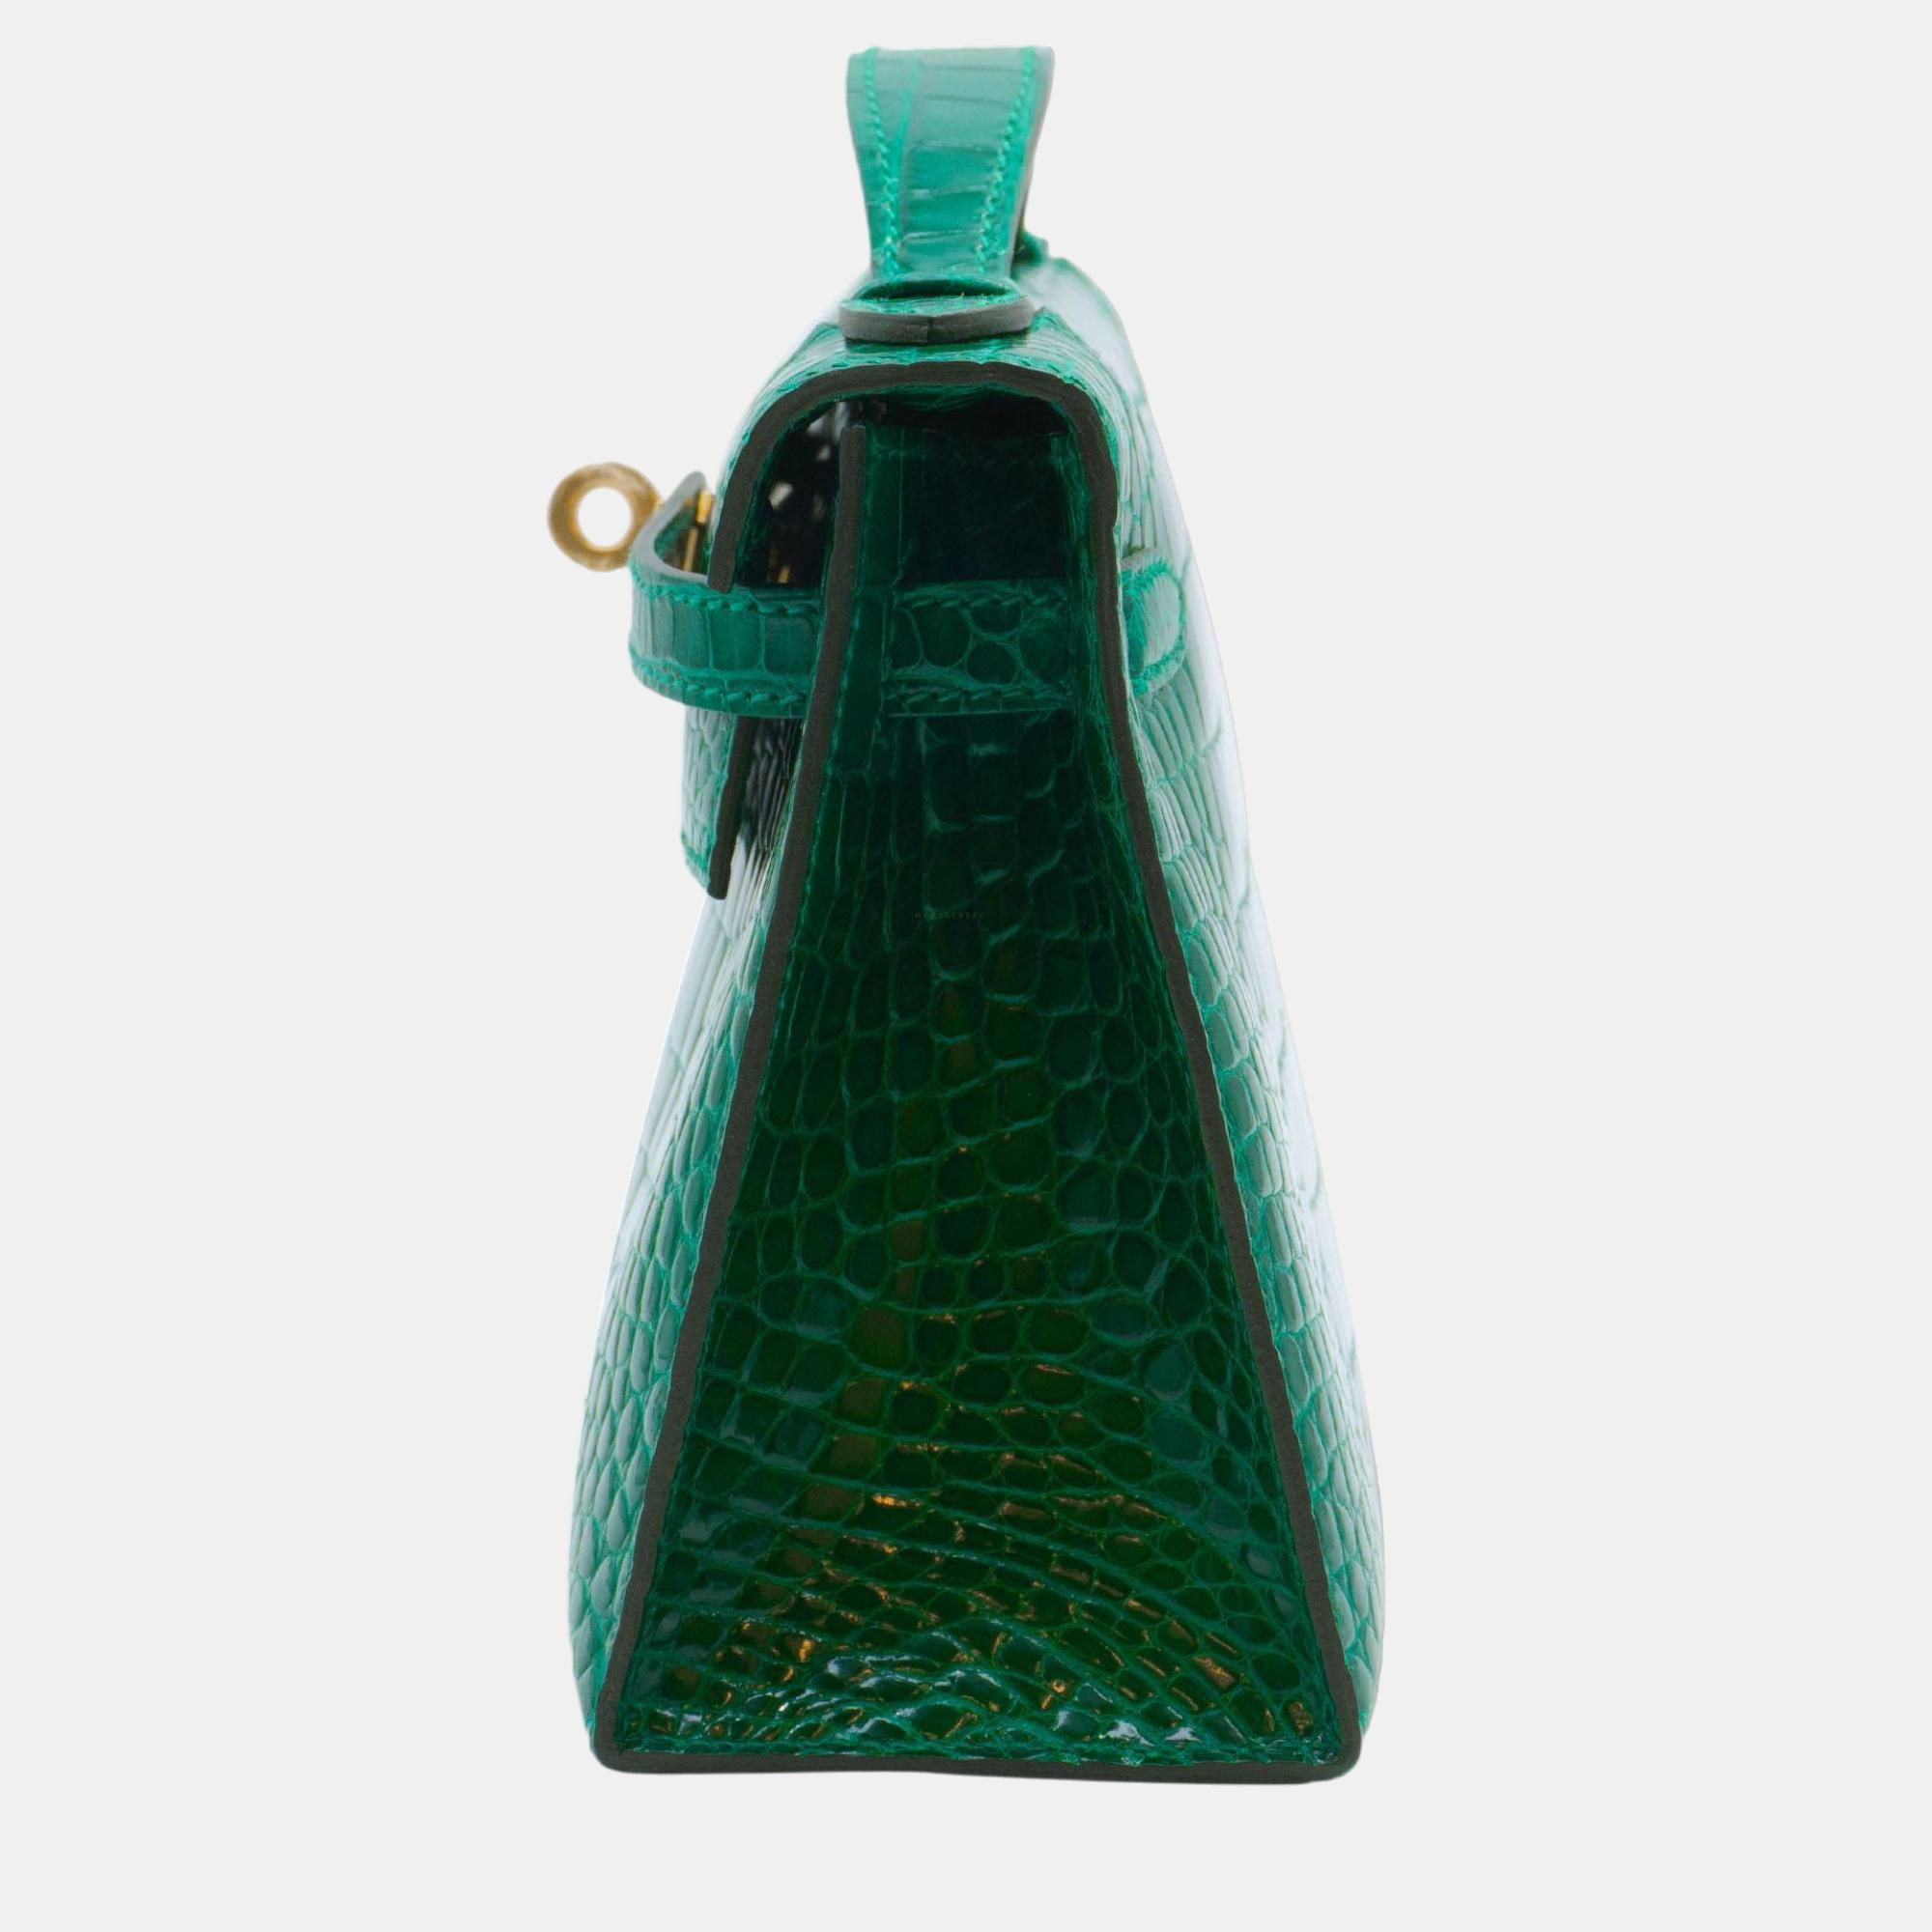 Hermès Kelly Pochette In Emerald Alligator With GHW Bag